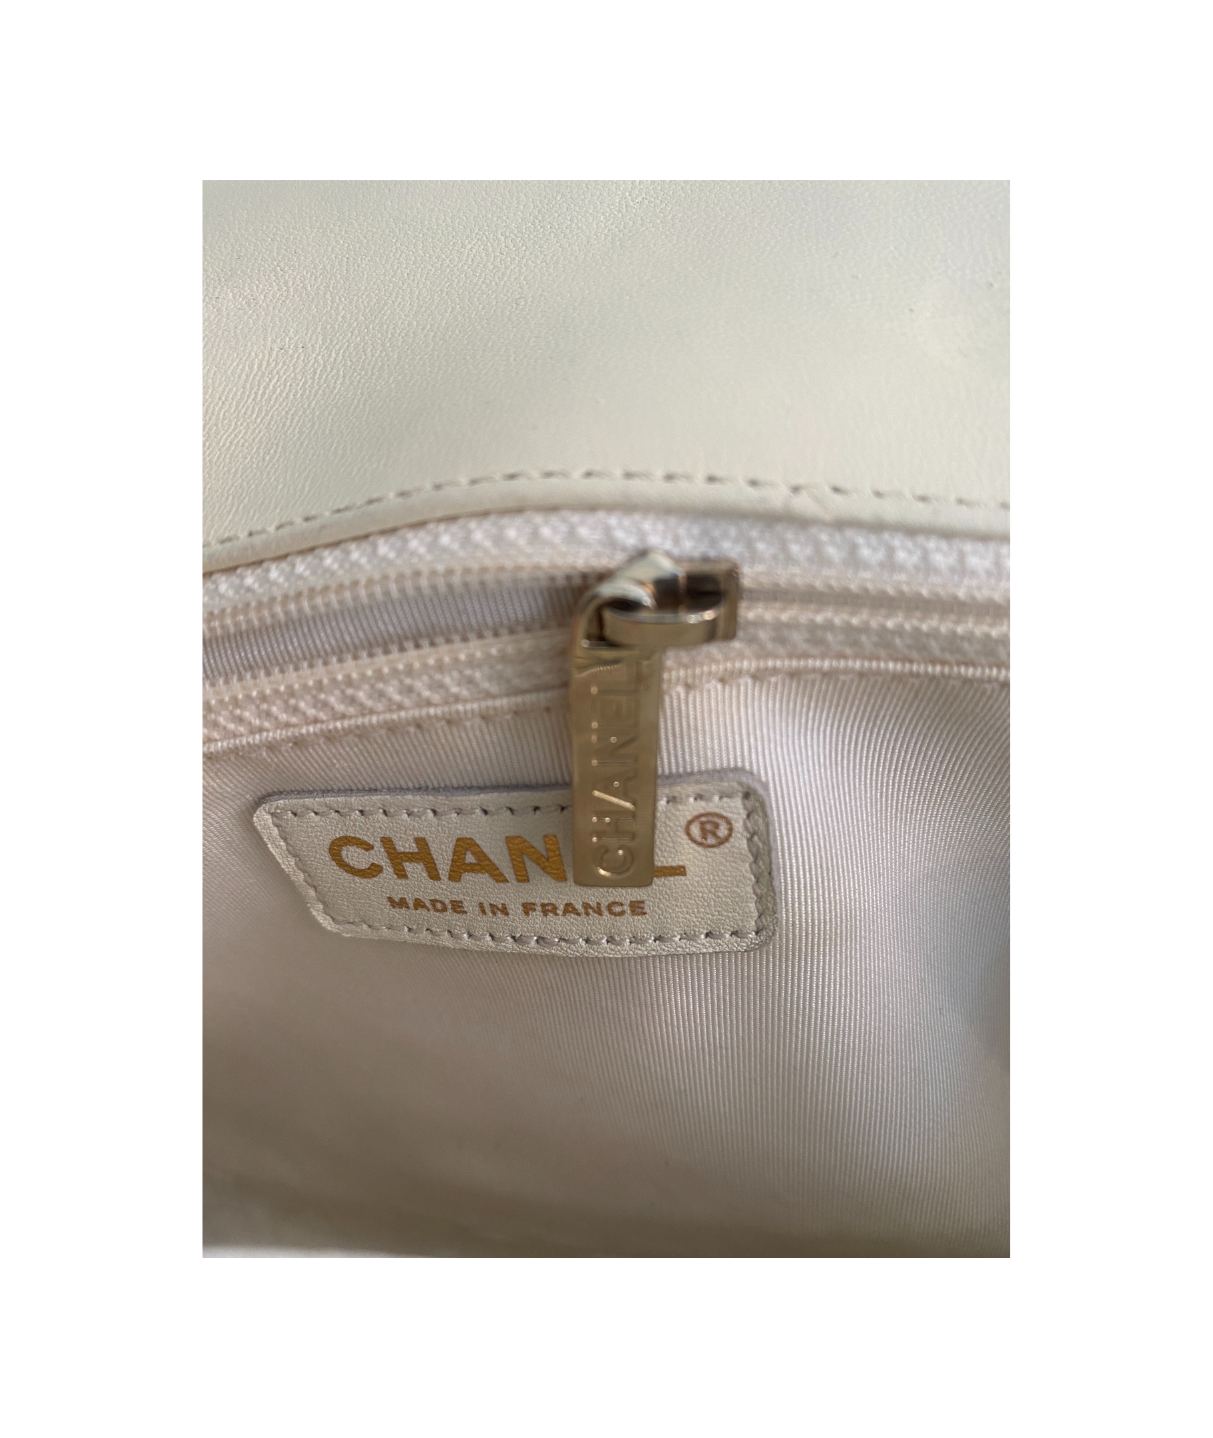 Chanel Boy: caratteristiche e prezzo della borsa iconica